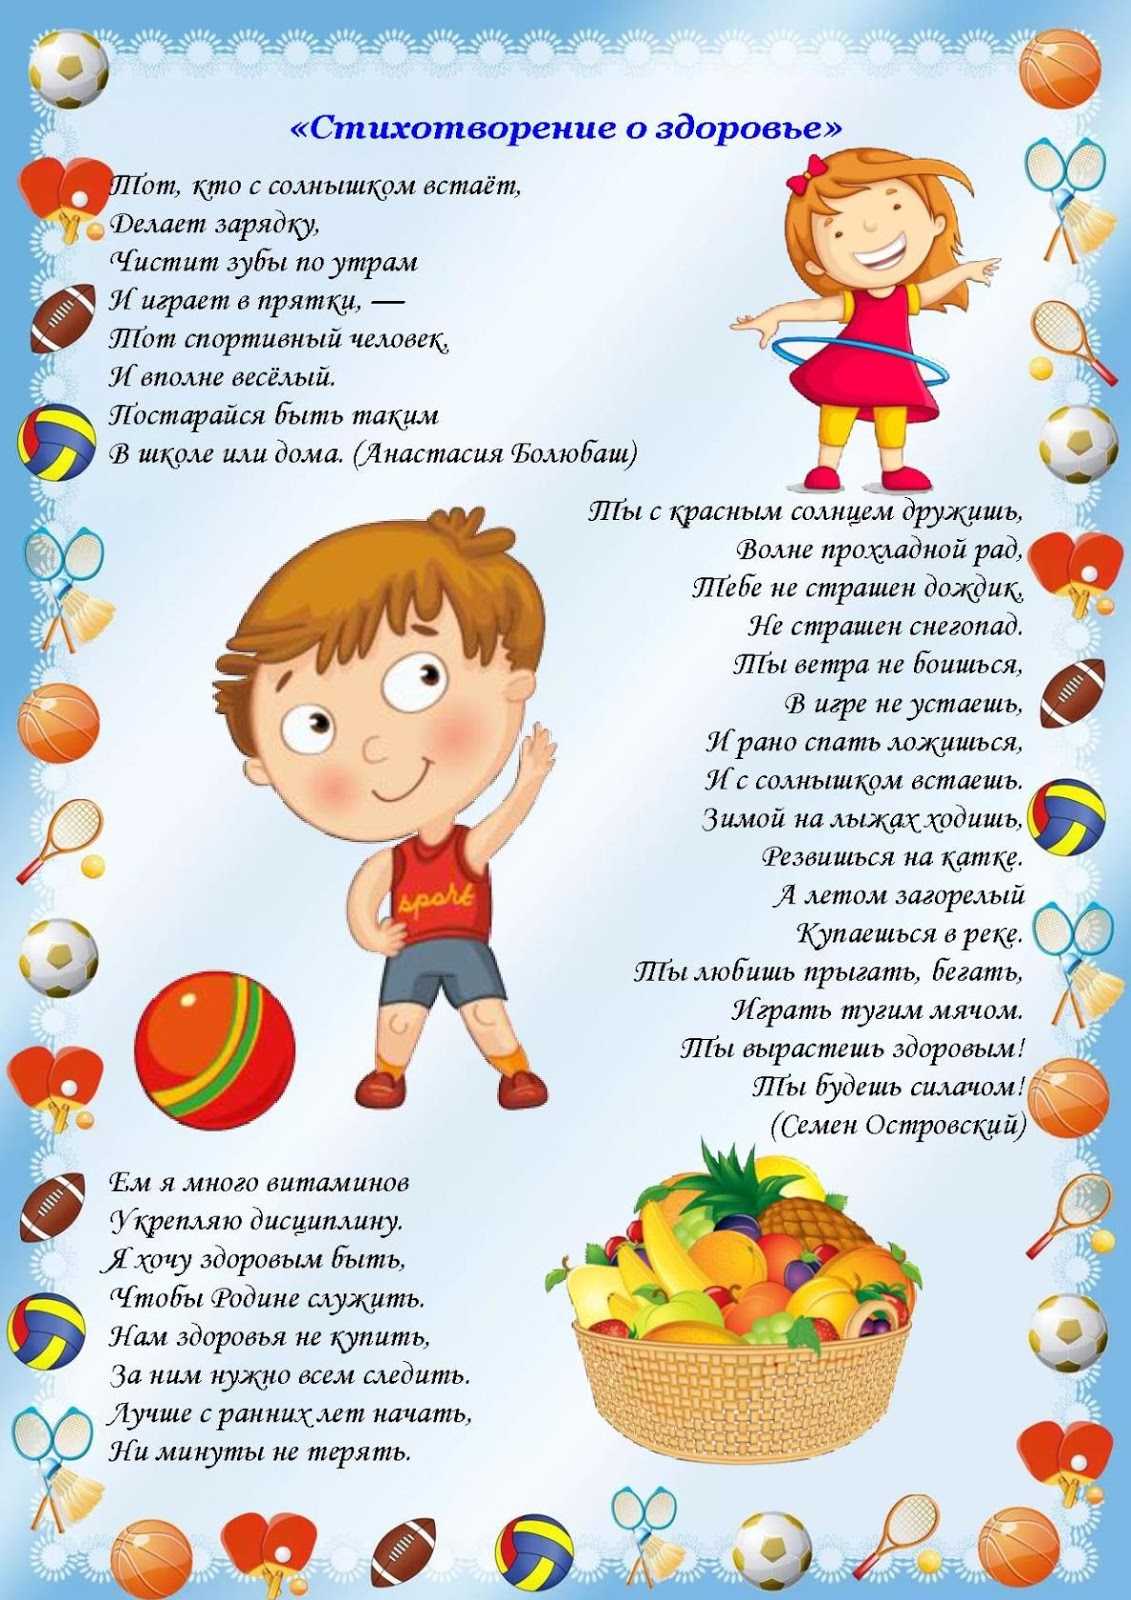 Стихи о спорте для детей: 24 лучших